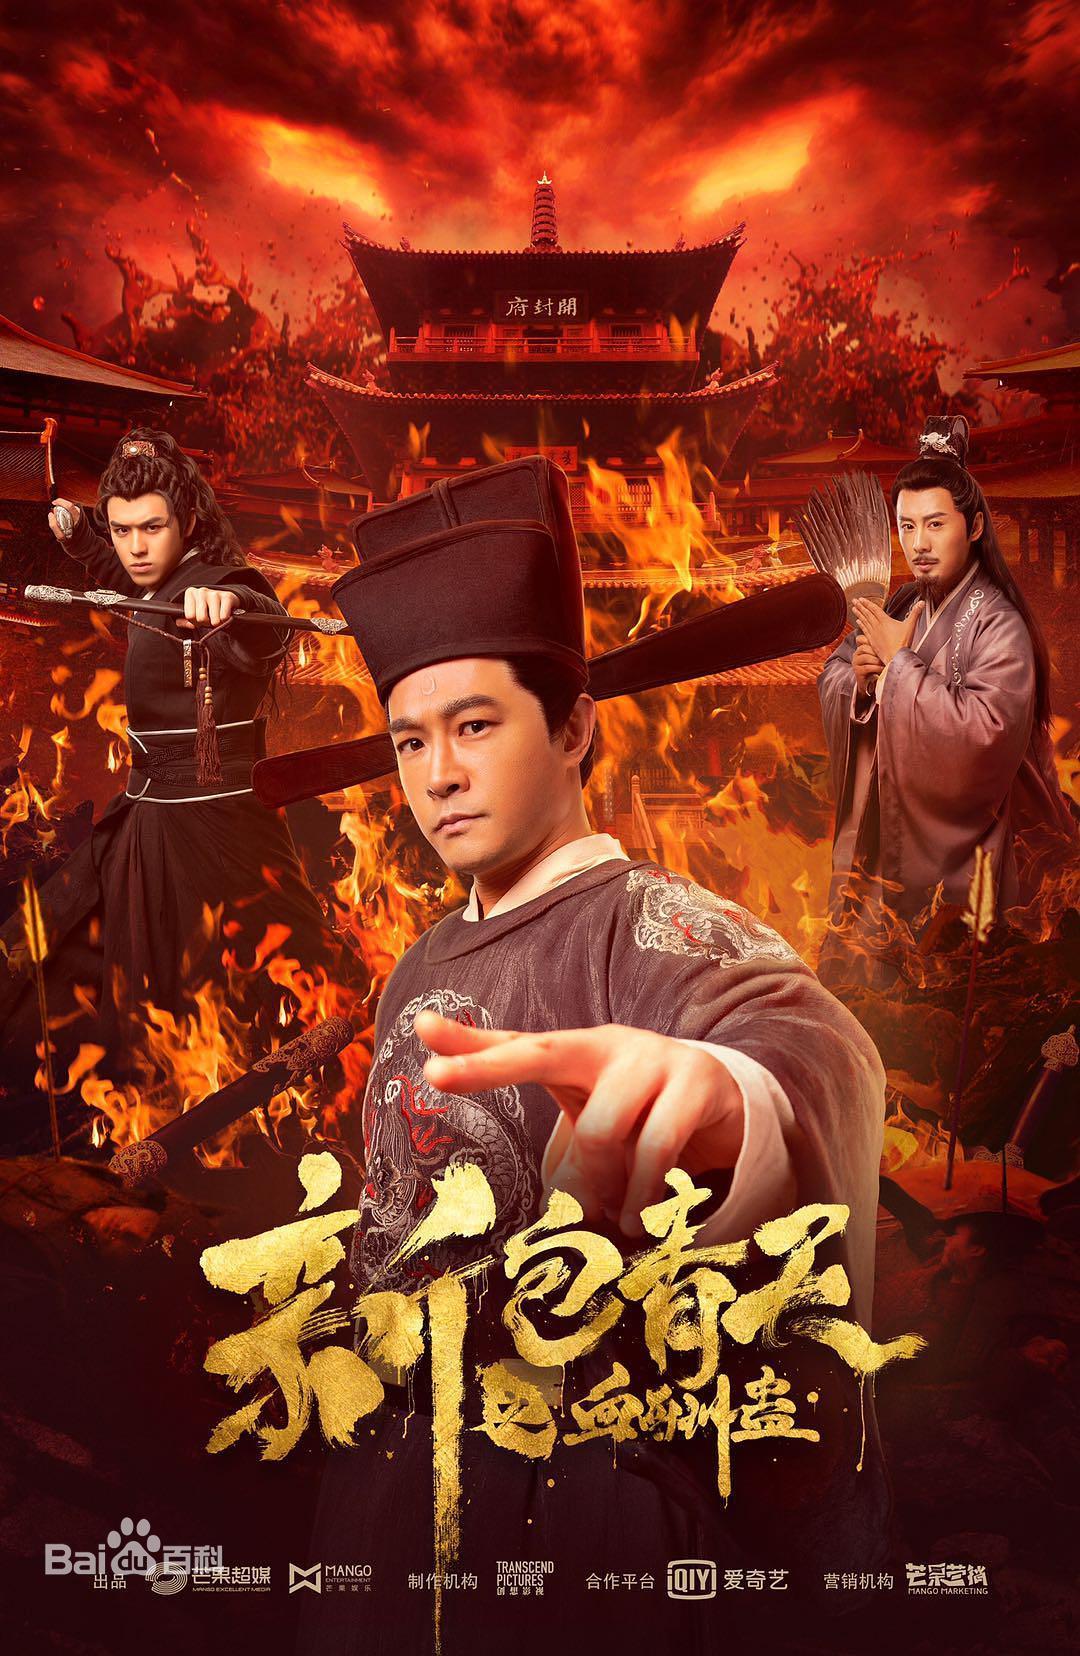 Tân Bao Thanh Thiên: Huyết Thù Cổ – Justice Bao (2019) Full HD Vietsub